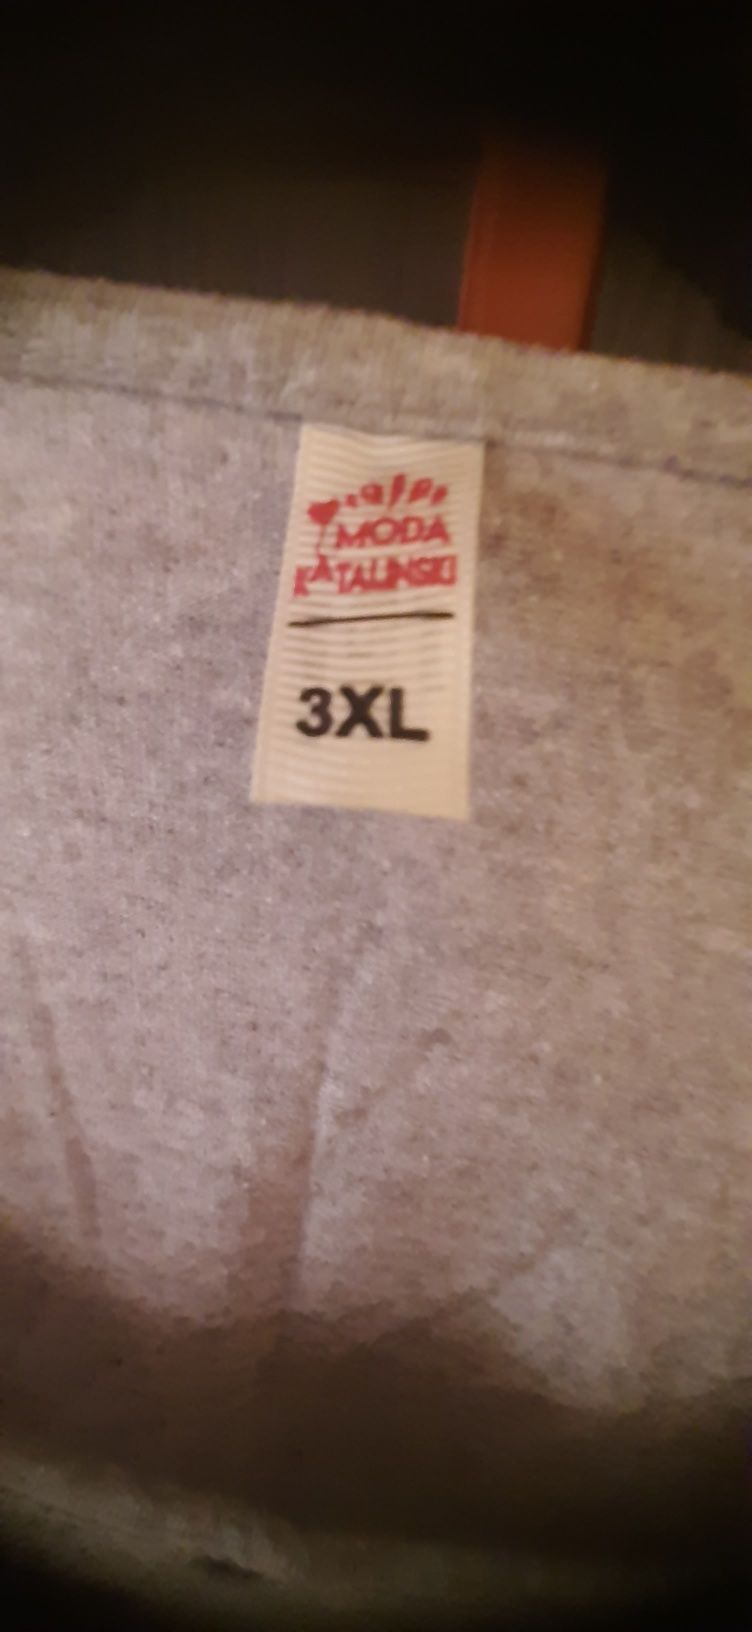 Bluzka damska szara z krótkim rękawem rozmiar 3 XL .